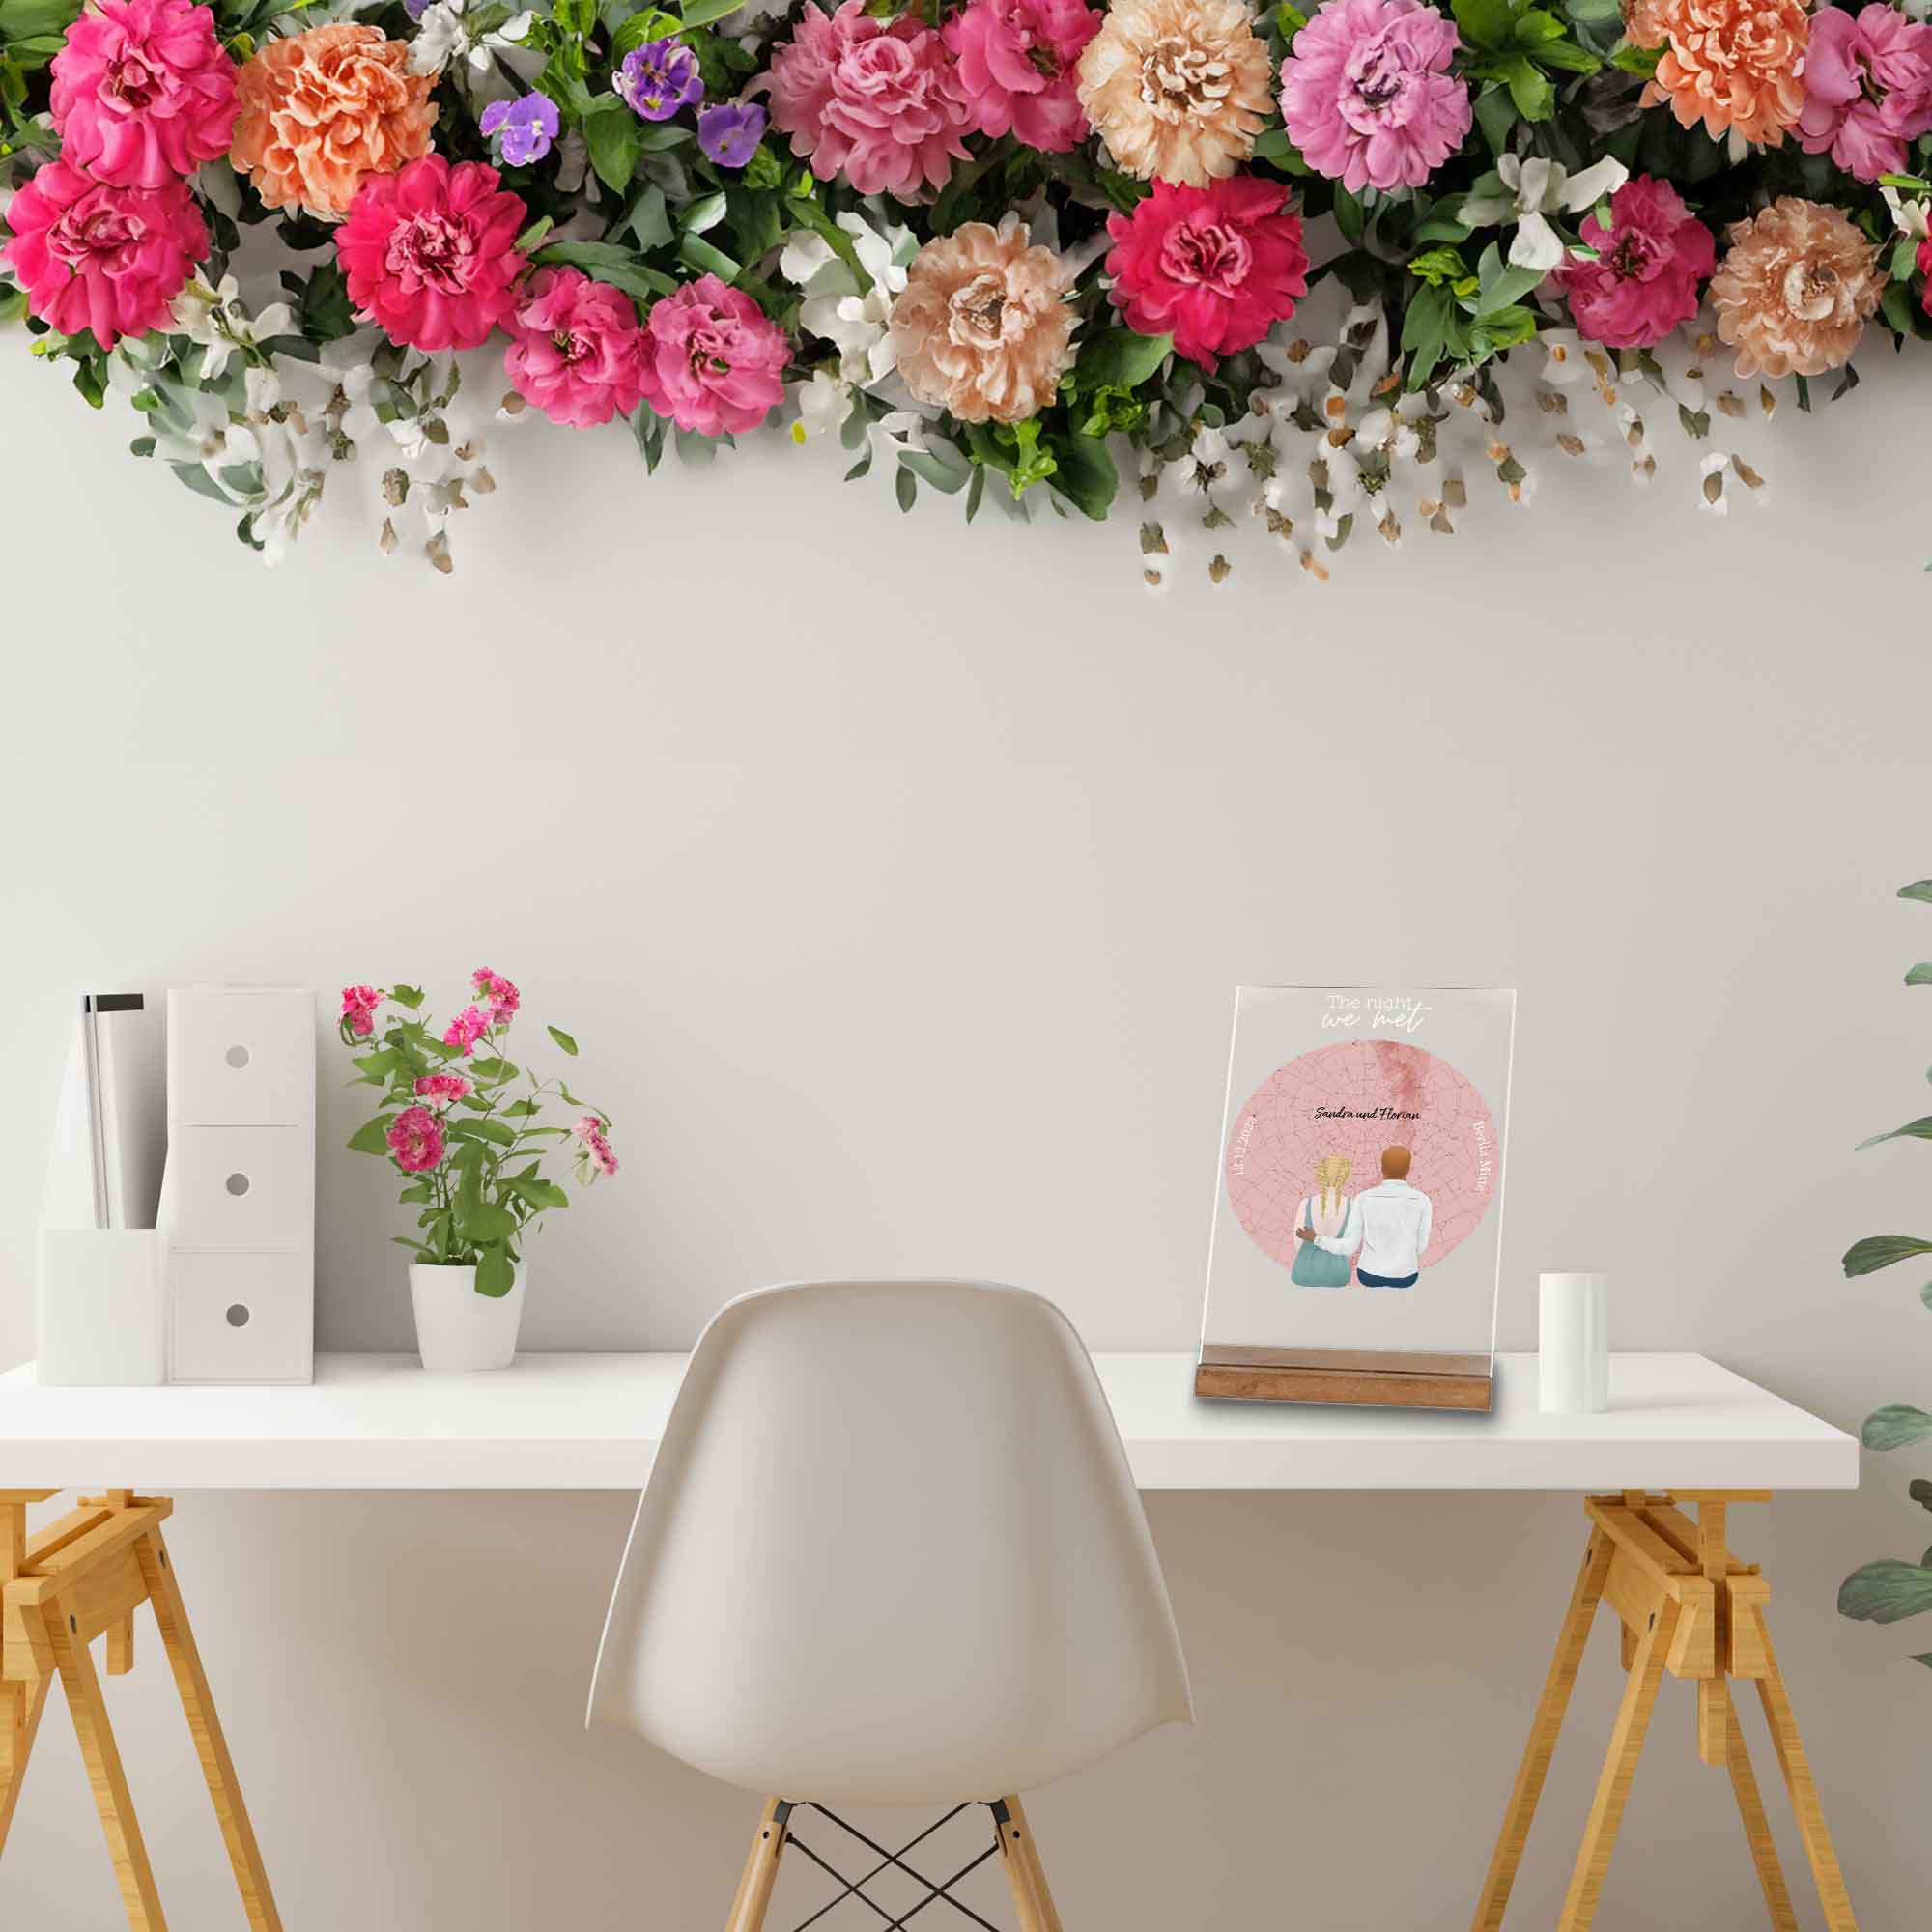 Geburtstagsgeschenk fuer Freundin-Dekoration auf dem Schreibtisch-mit Blumenkranz